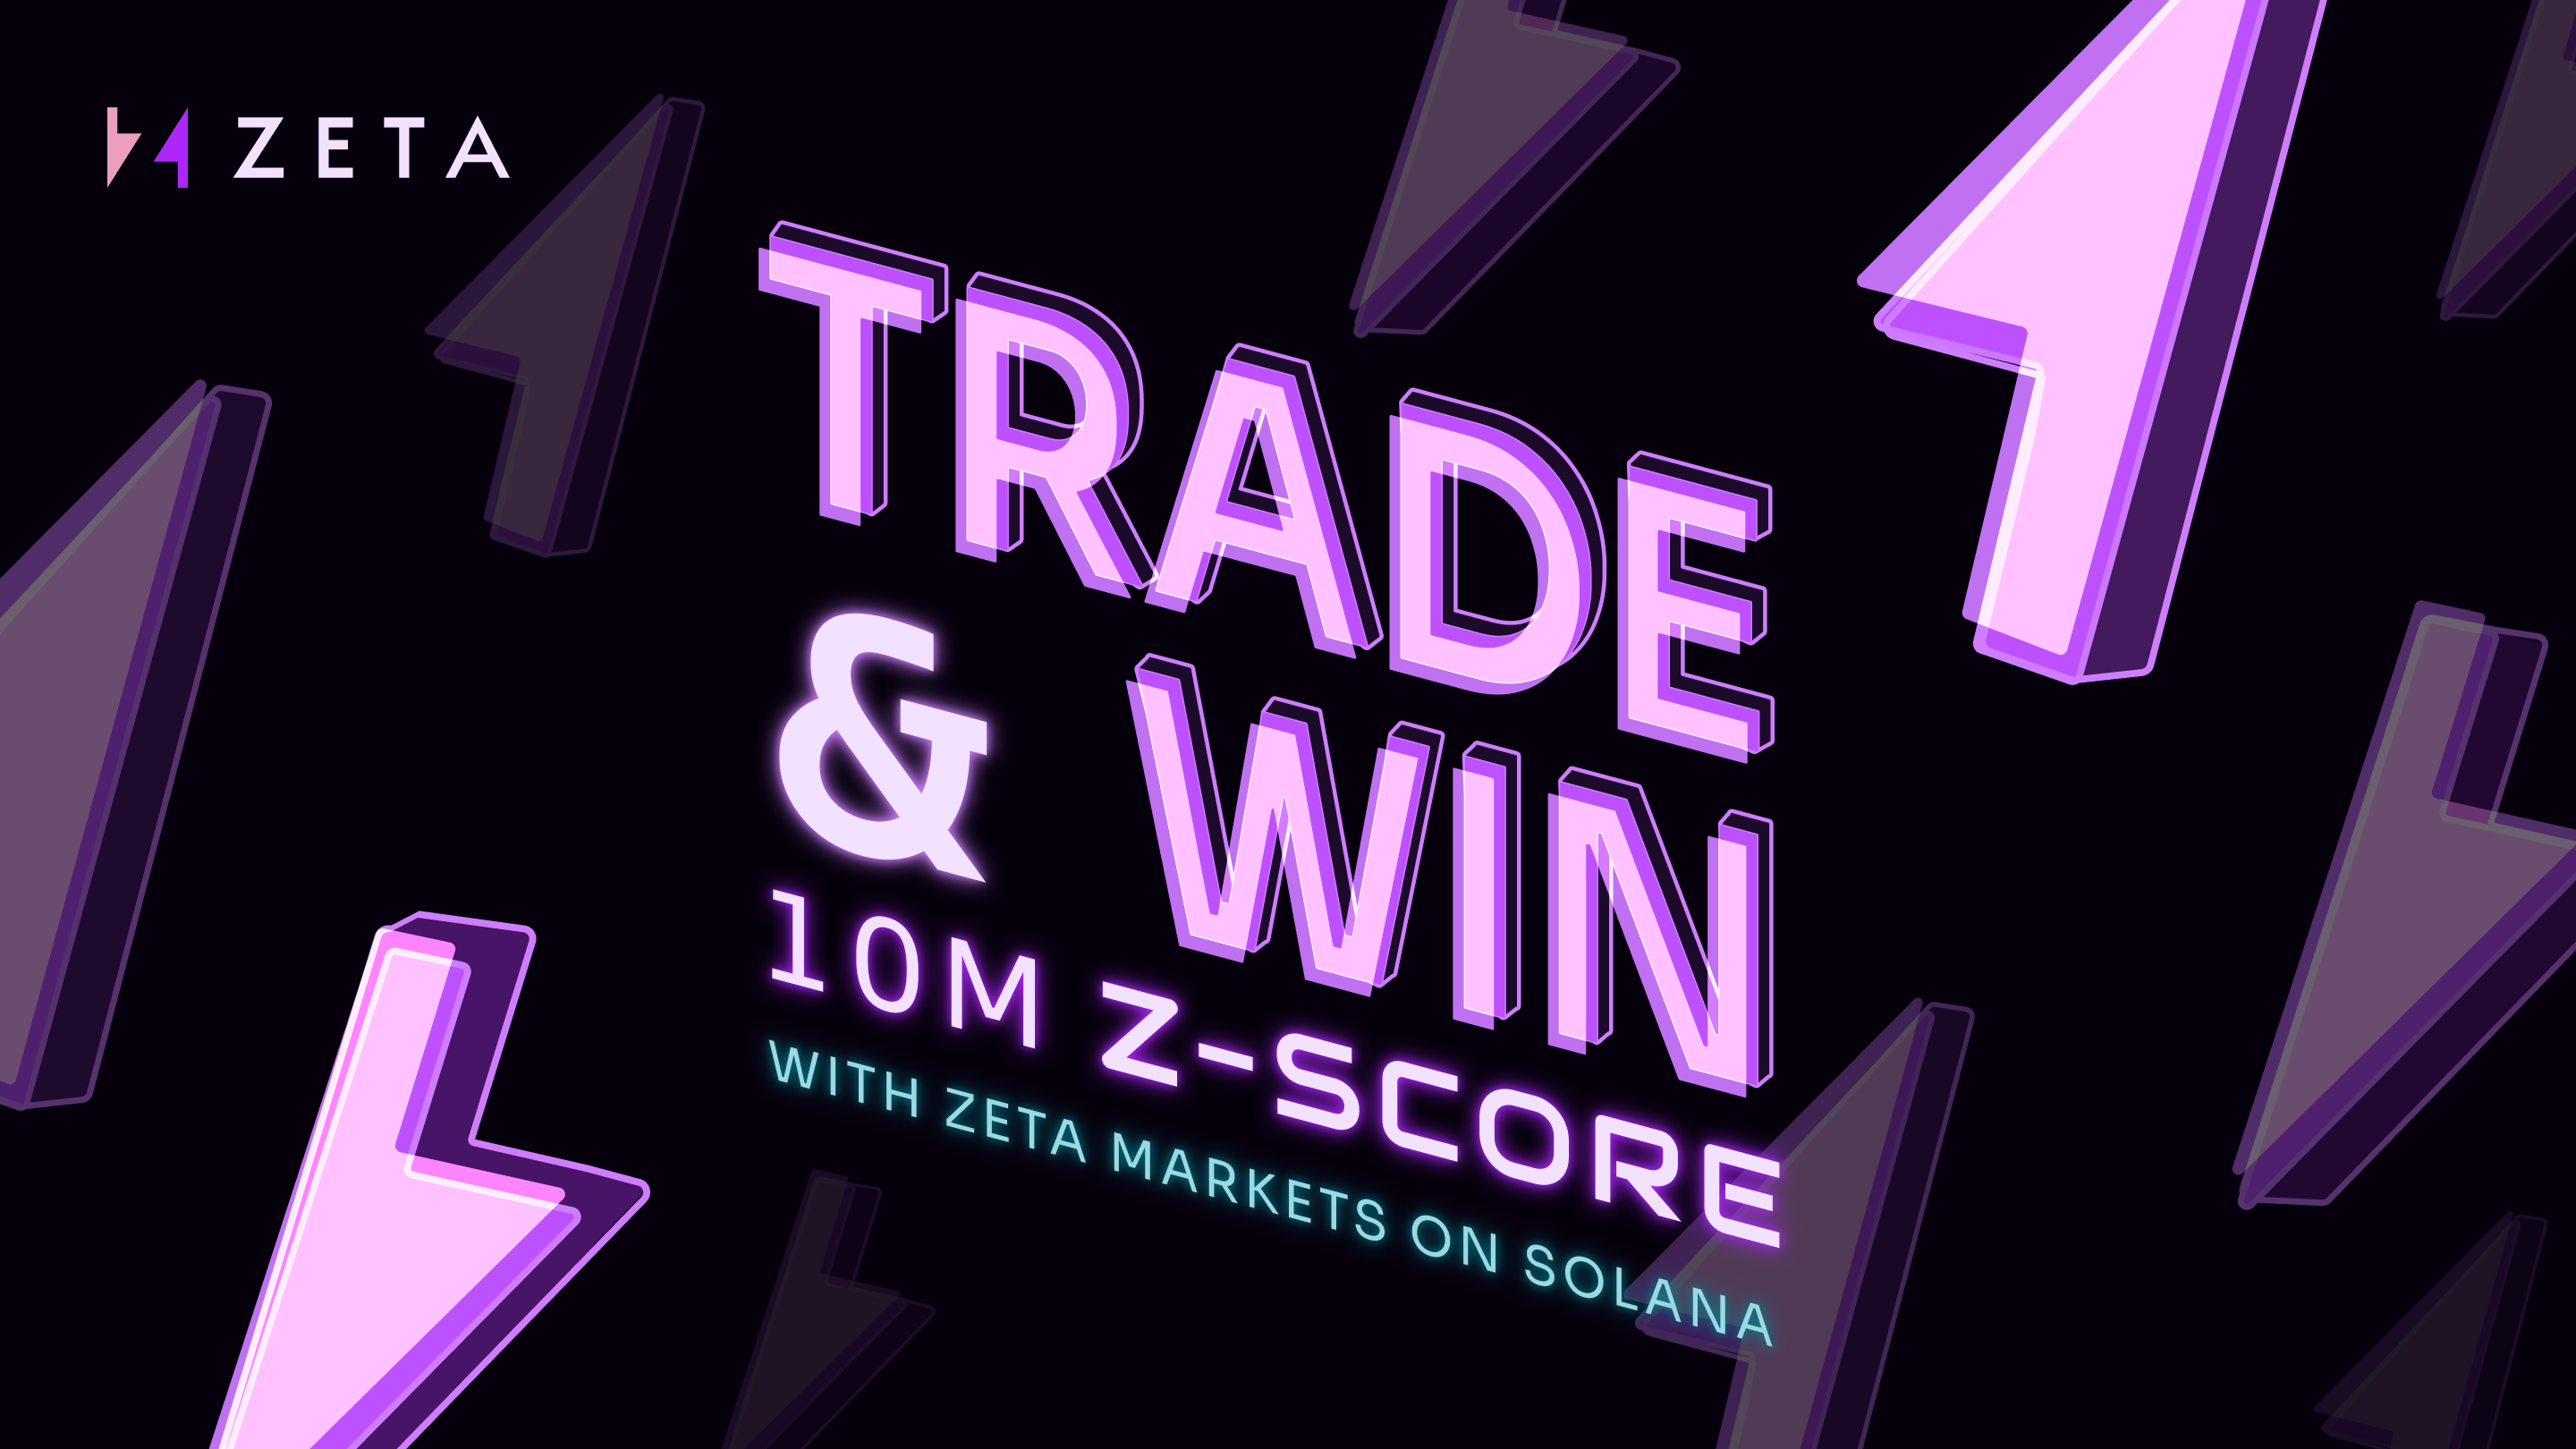 Zeta Markets Z-Score Raffle